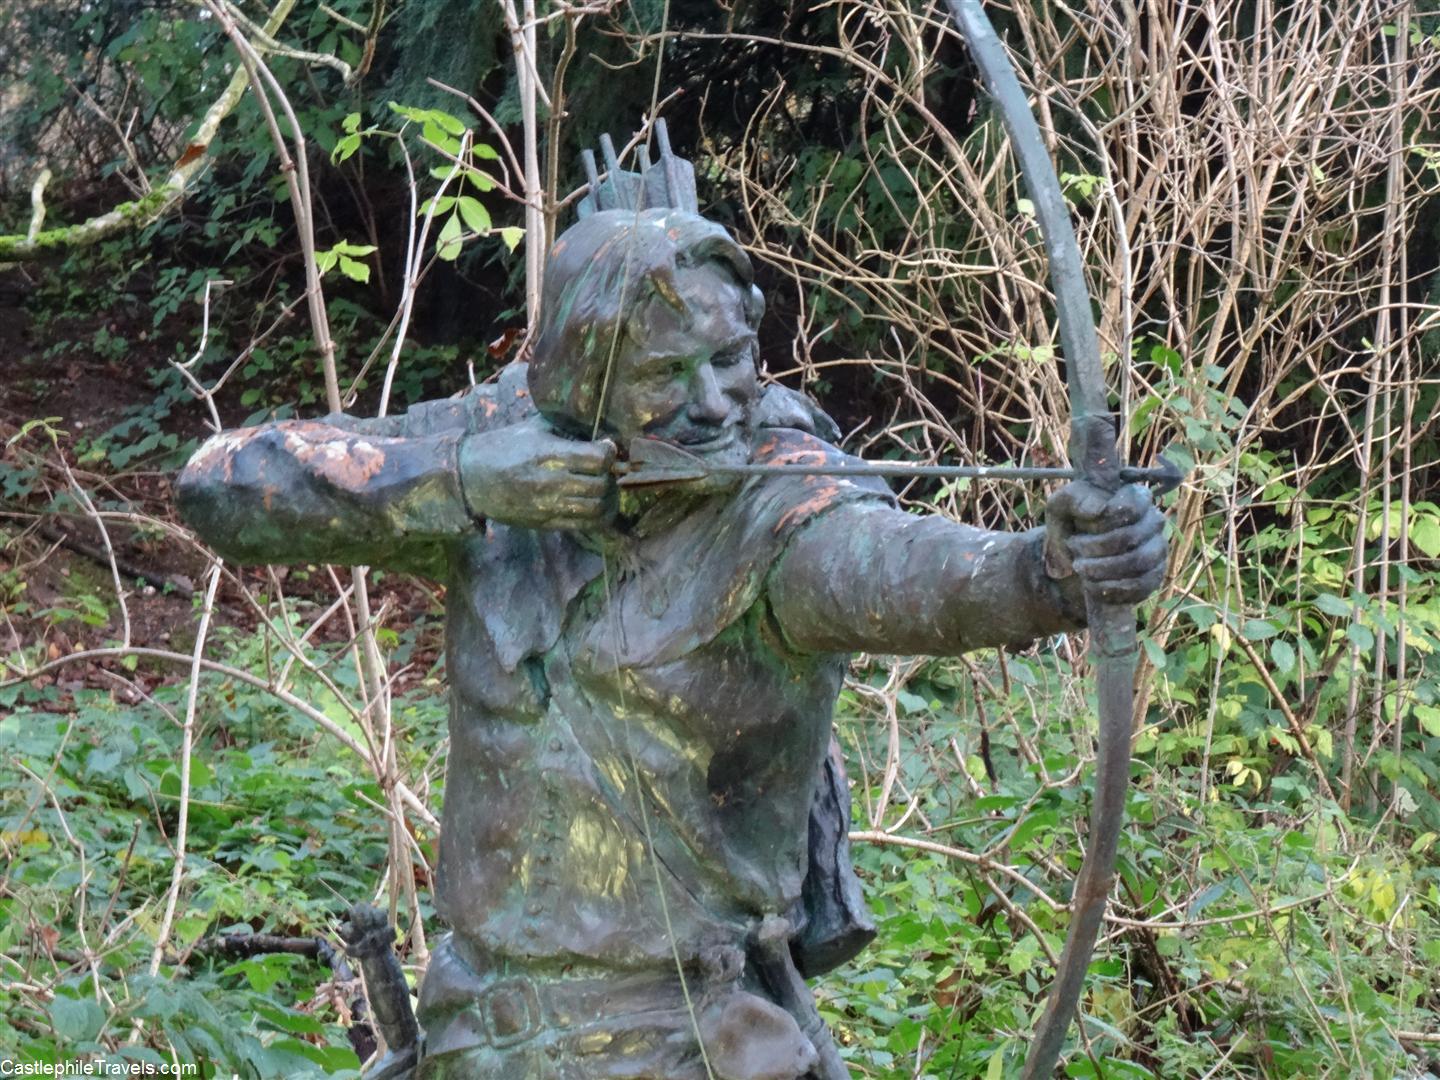 Robin Hood statue in Sherwood Forest